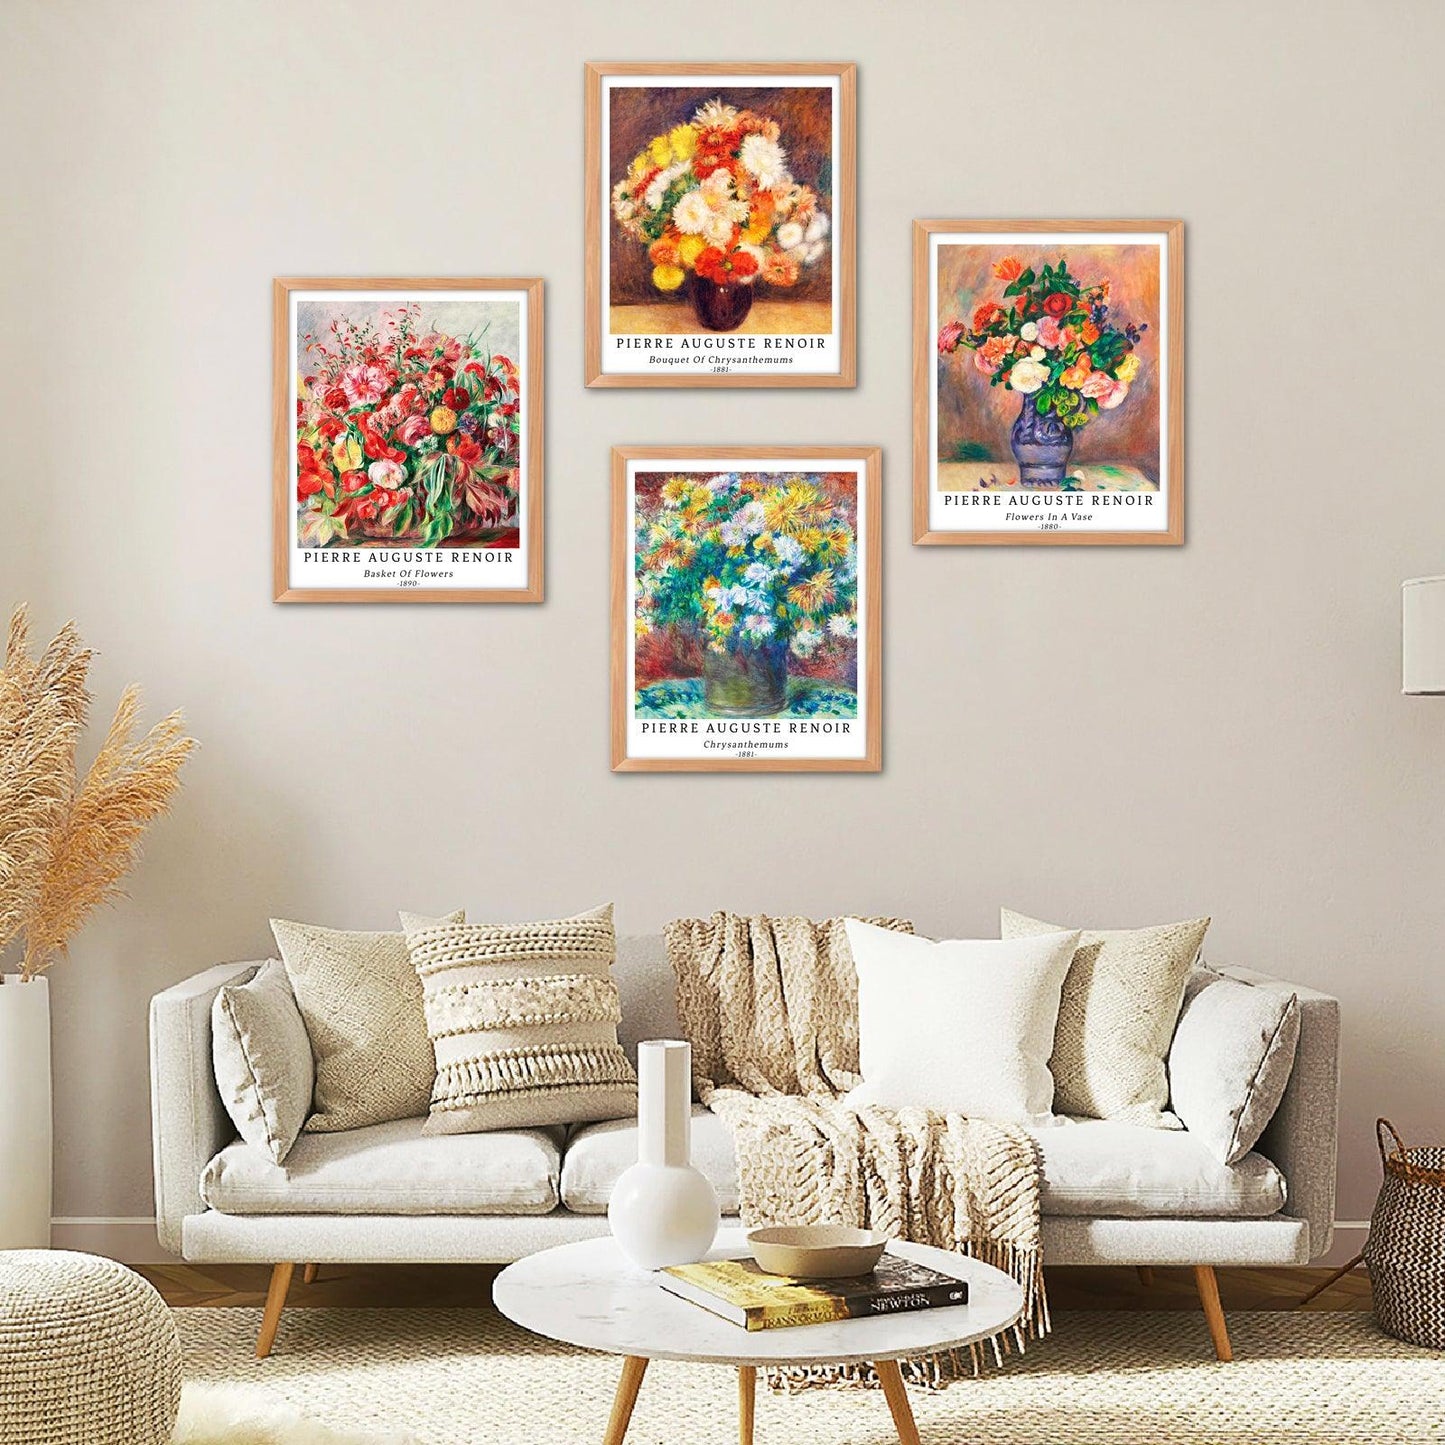 Flower Art Paper Giclee Prints Set of 4 (Pierre Auguste Renoir Series) - Berkin Arts